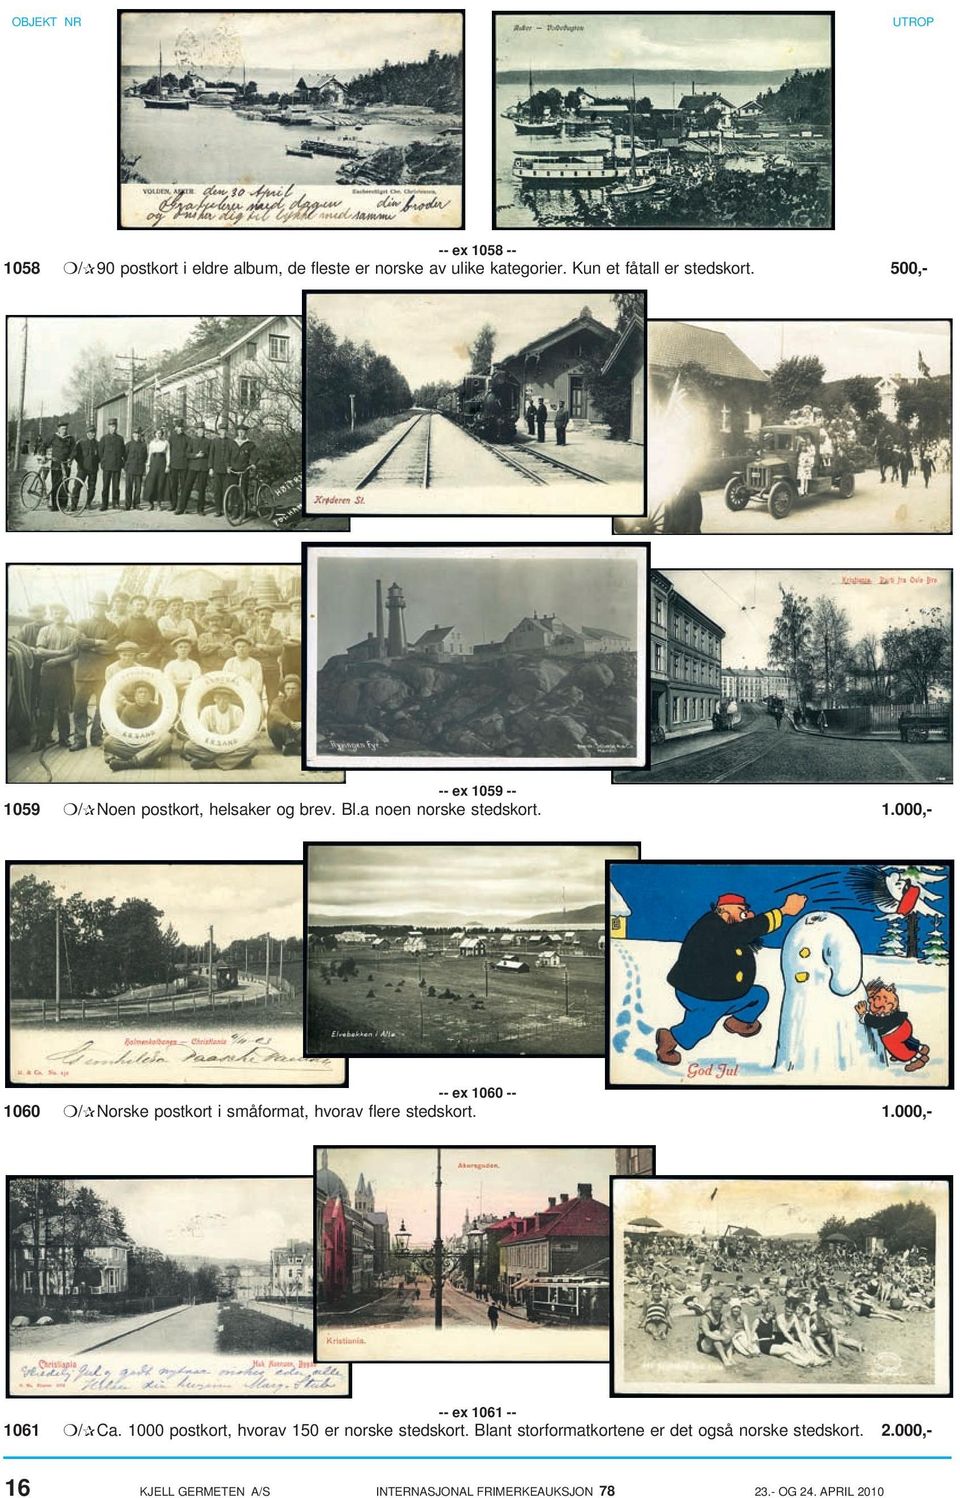 1.000,- -- ex 1061 -- 1061 / Ca. 1000 postkort, hvorav 150 er norske stedskort.